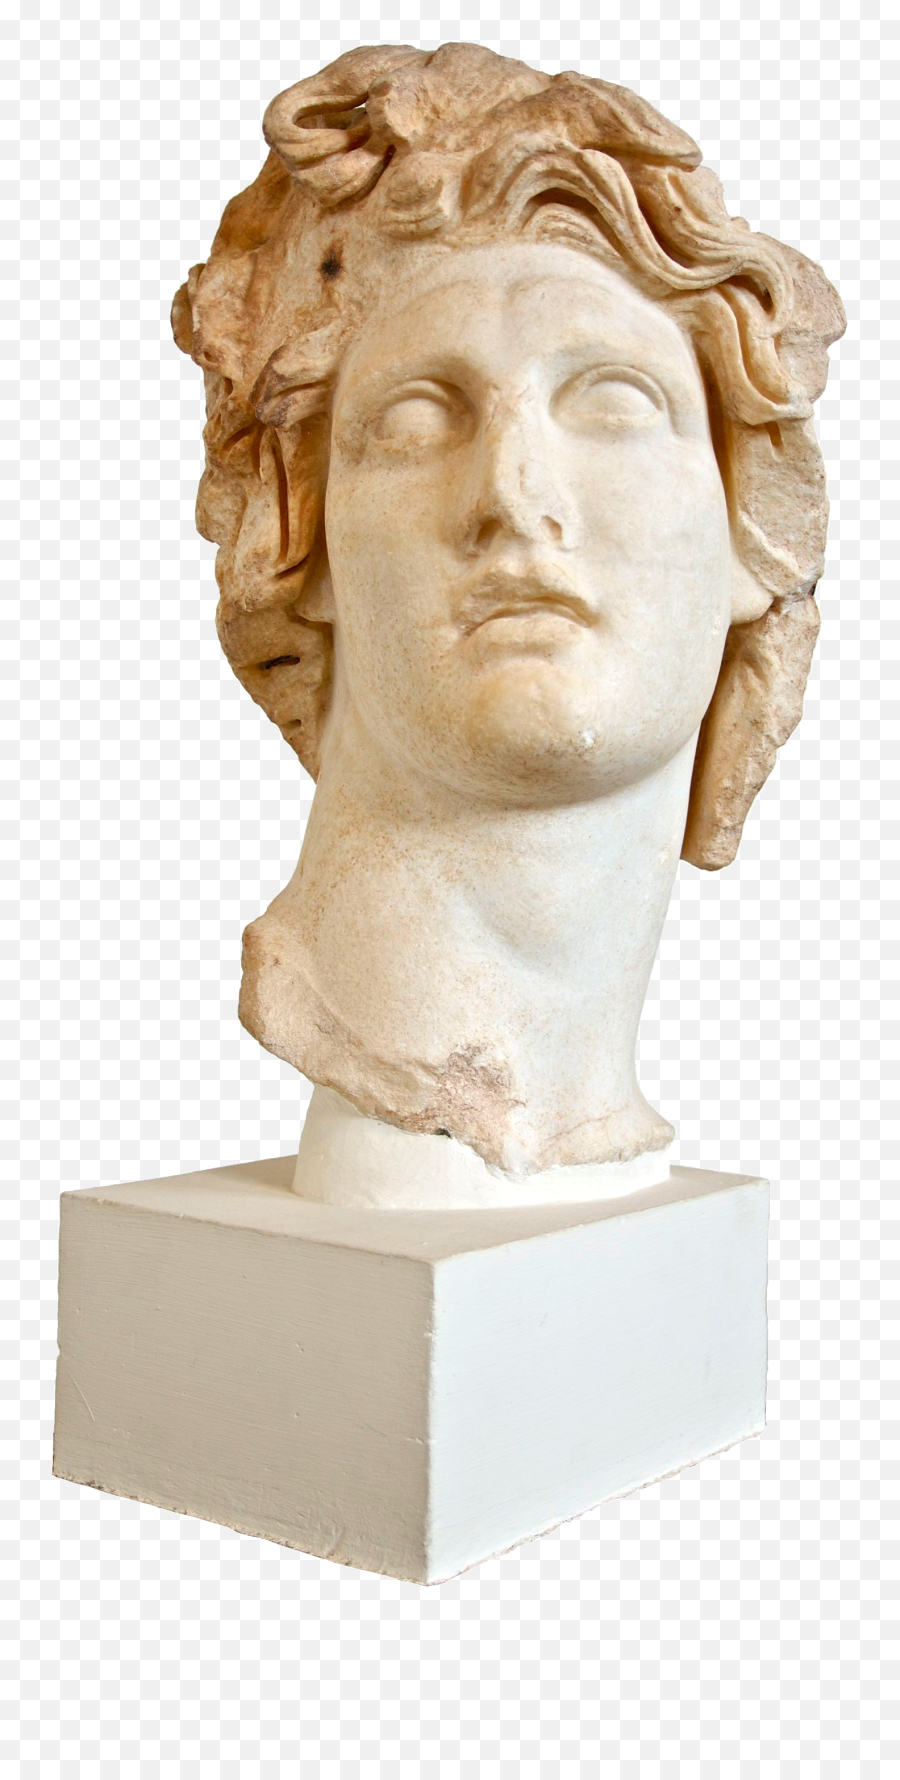 15 Greek Statue Png For Free Download - Vaporwave Statue Png,Greek Statue Png